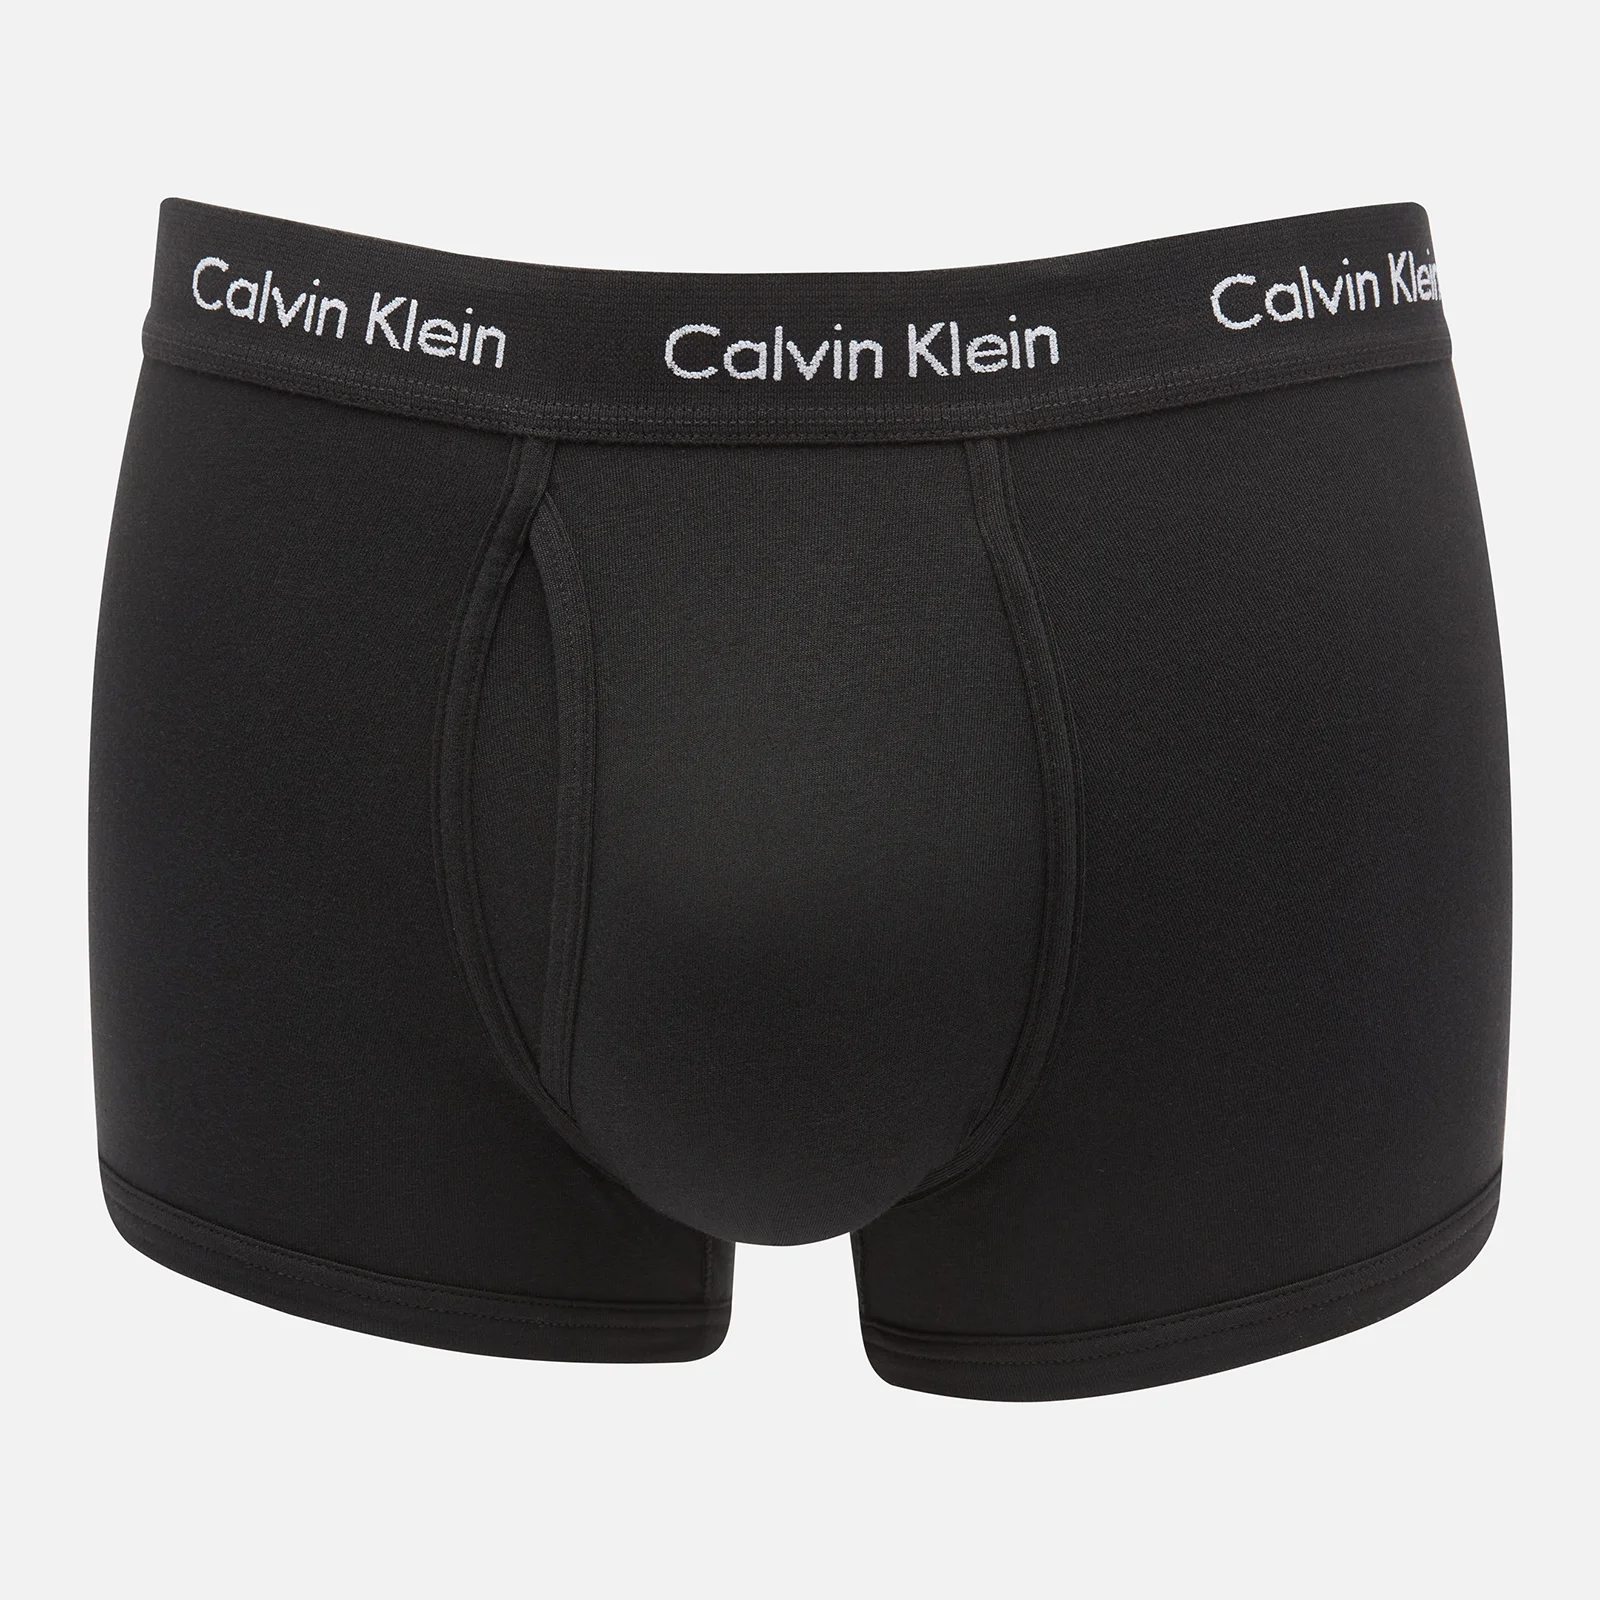 Calvin Klein Men's Modern Essentials Trunks - Black Image 1